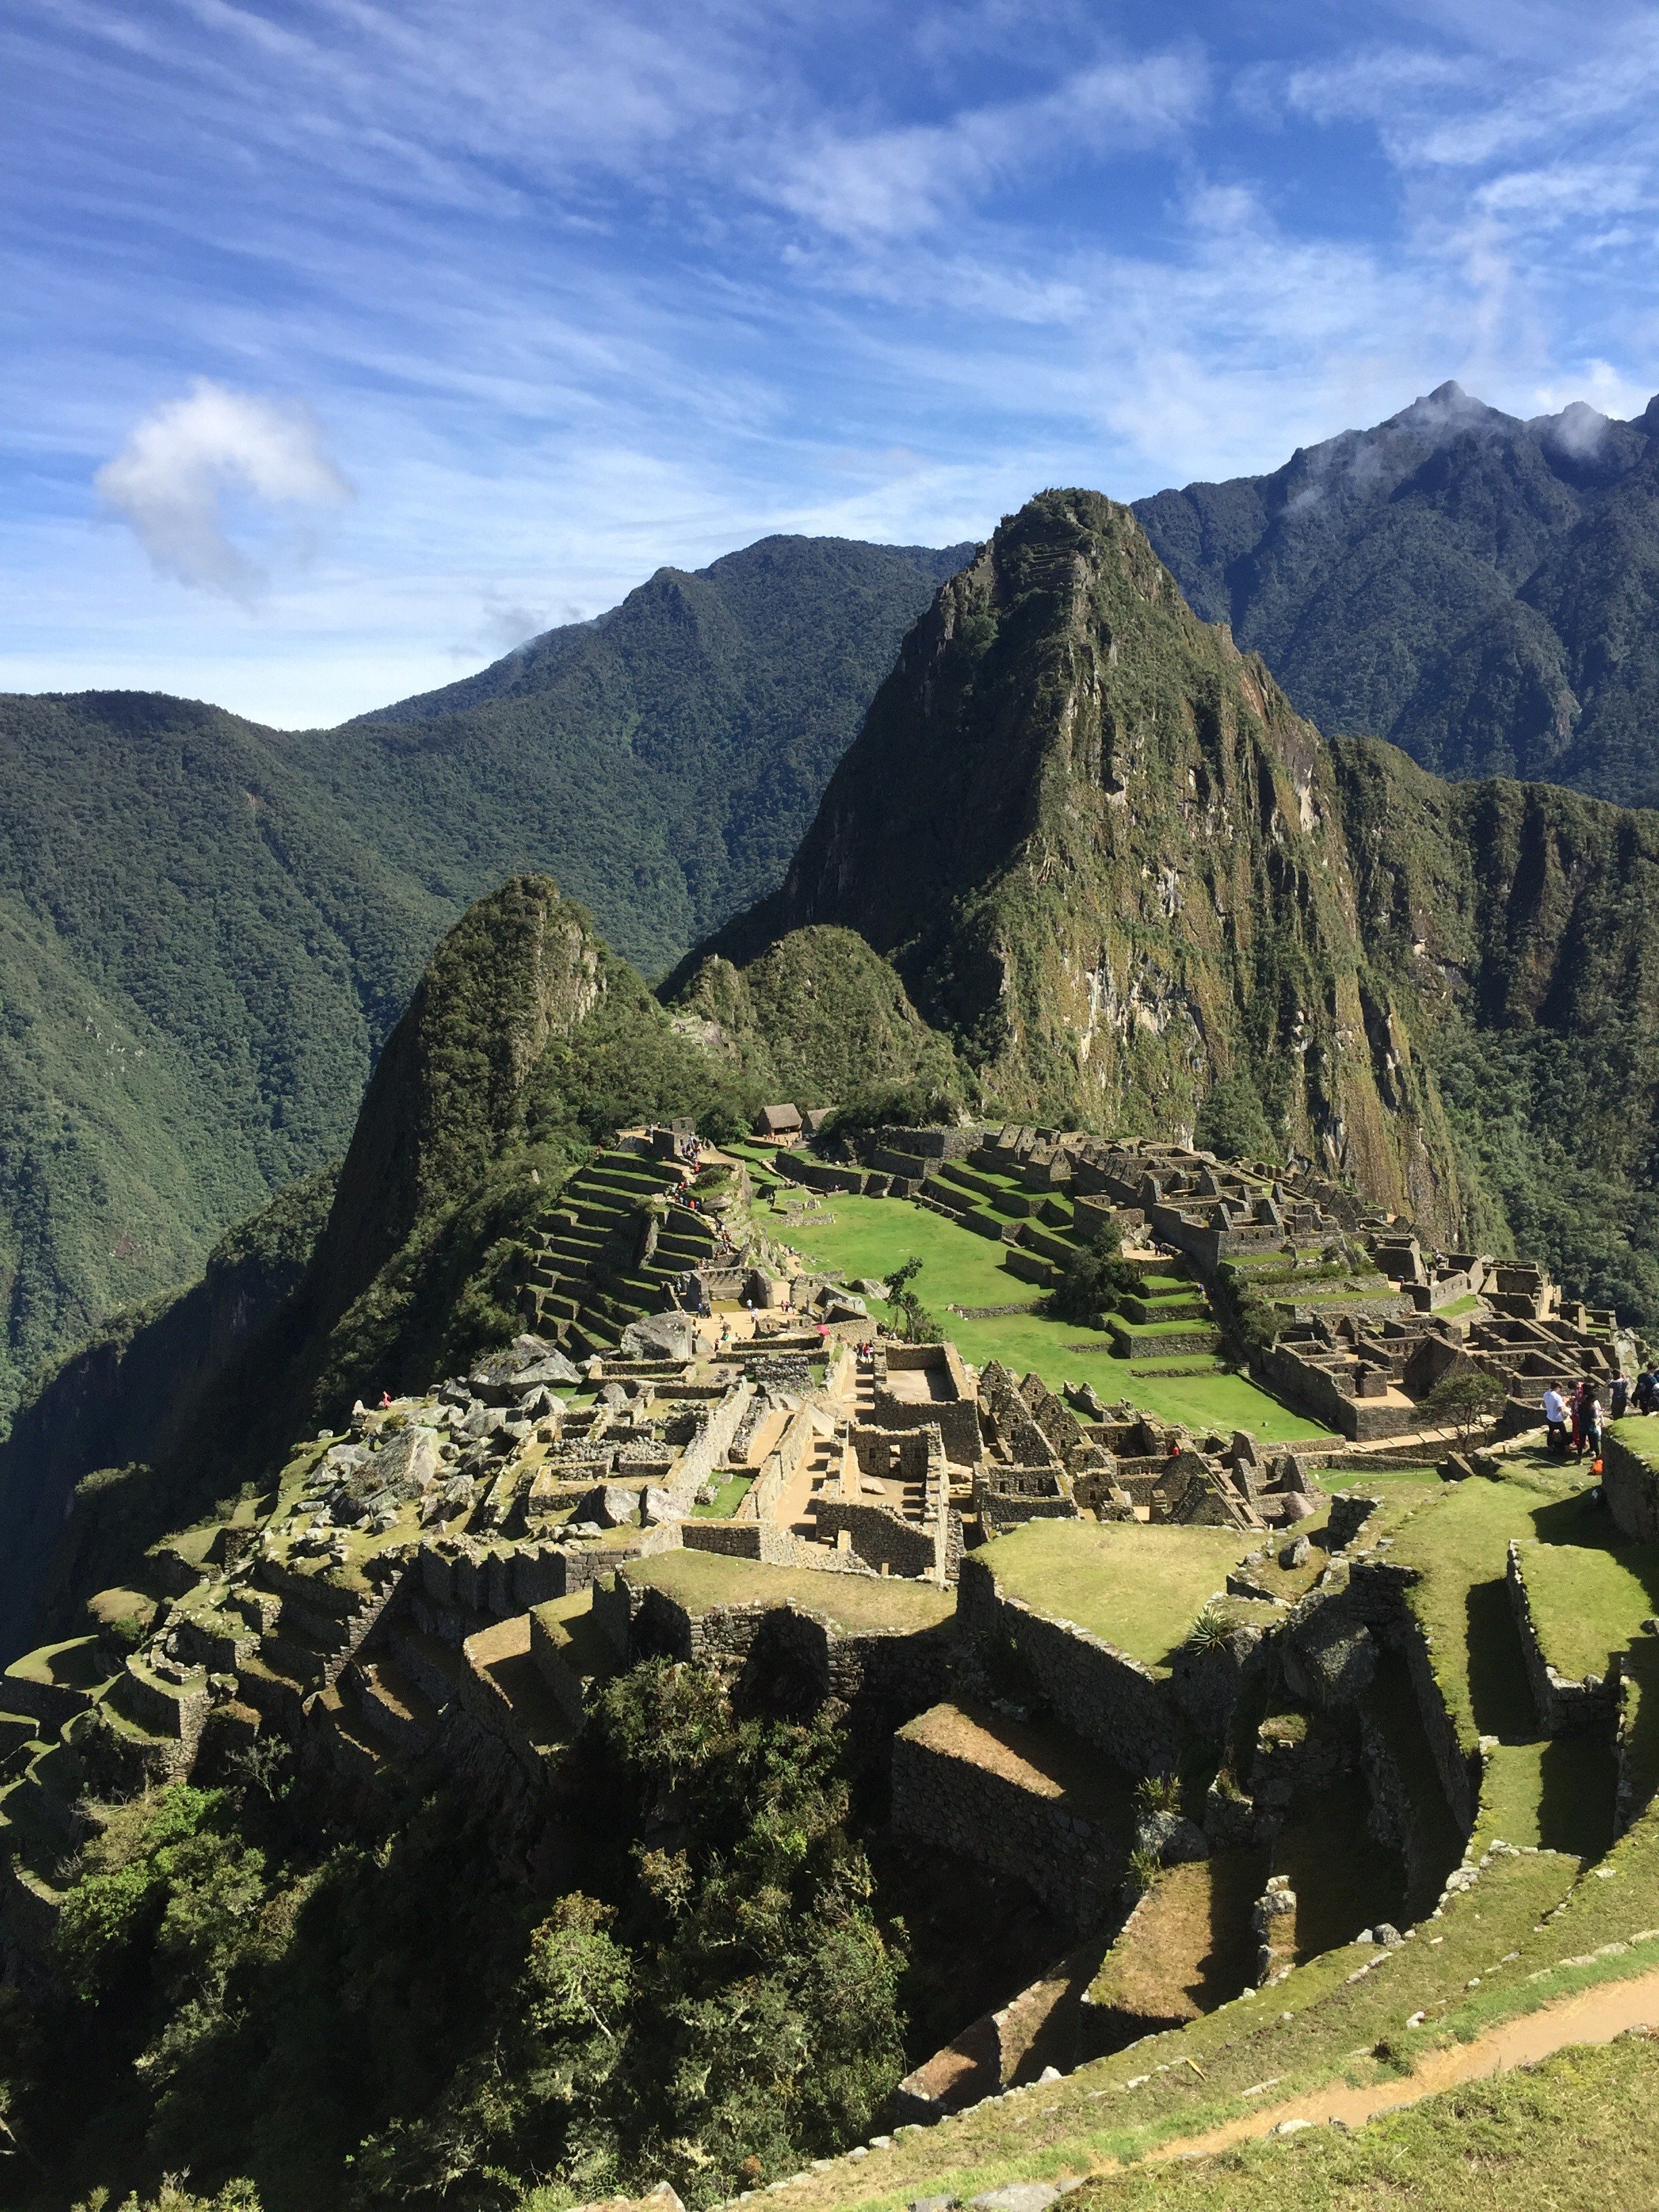 マッキー 美しい風景が好き 古代都市マチュピチュ ペルー 大自然の中に建築物や文明が今でも残っているのがすごいなぁとしみじみしました T Co 0fw69h4jeb Twitter